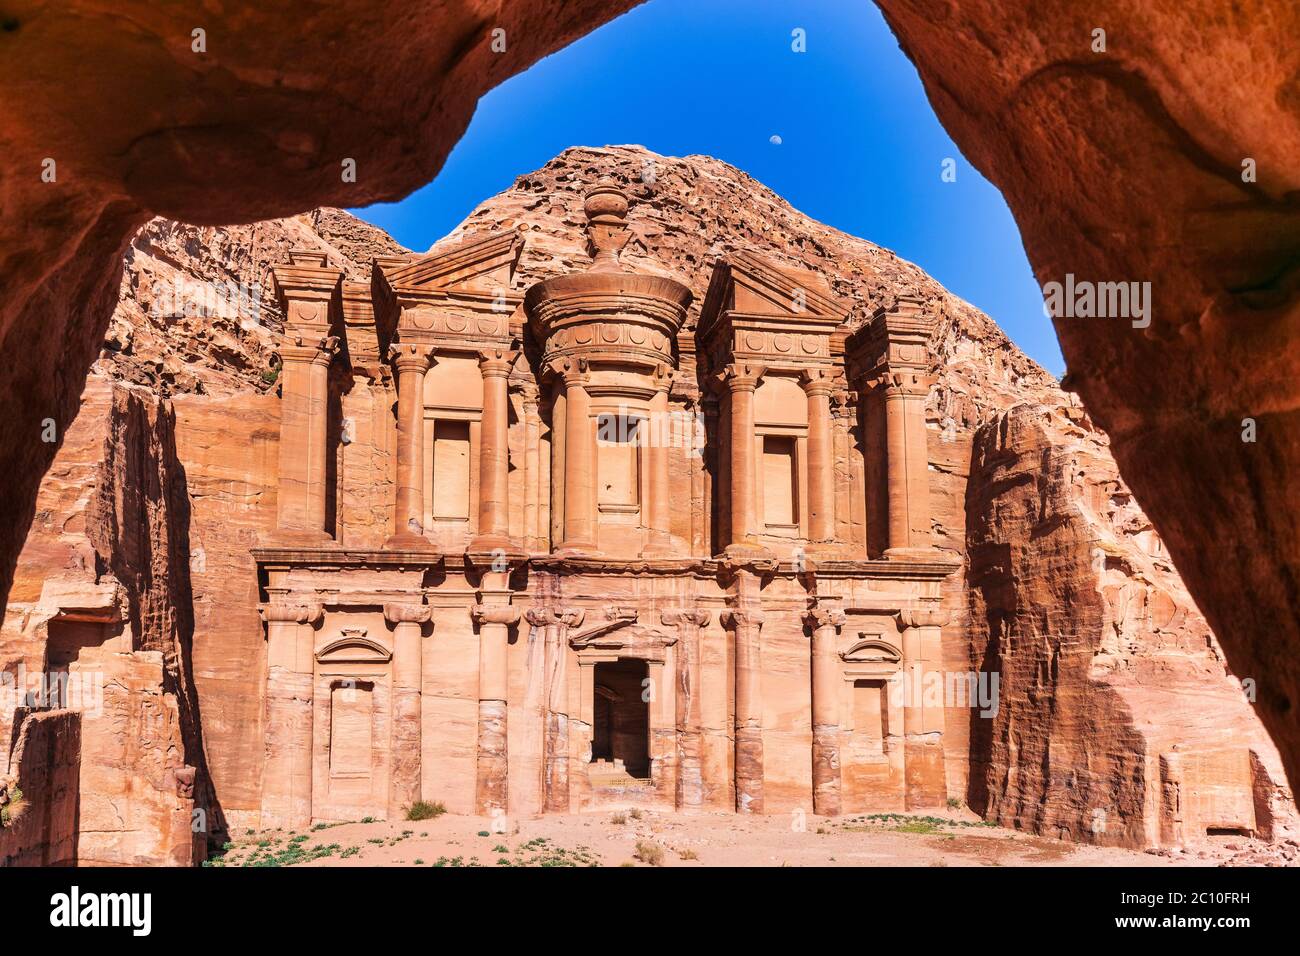 Petra, Jordania. El Deir (el Monasterio) en Petra, la capital del antiguo Reino nabateño. Foto de stock